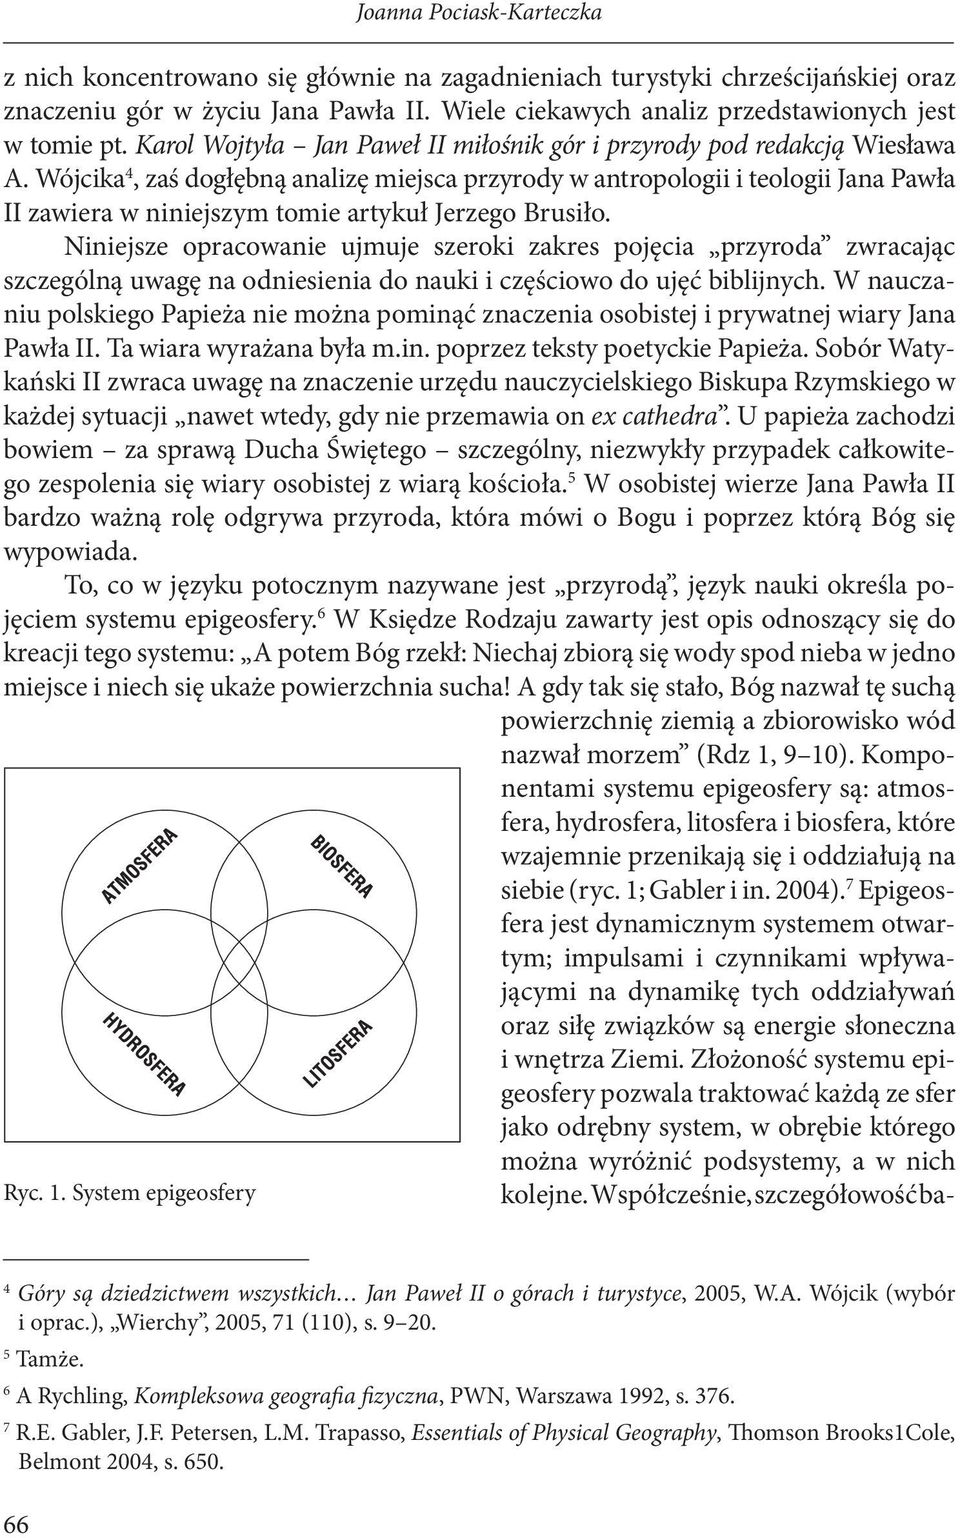 Wójcika 4, zaś dogłębną analizę miejsca przyrody w antropologii i teologii Jana Pawła II zawiera w niniejszym tomie artykuł Jerzego Brusiło.